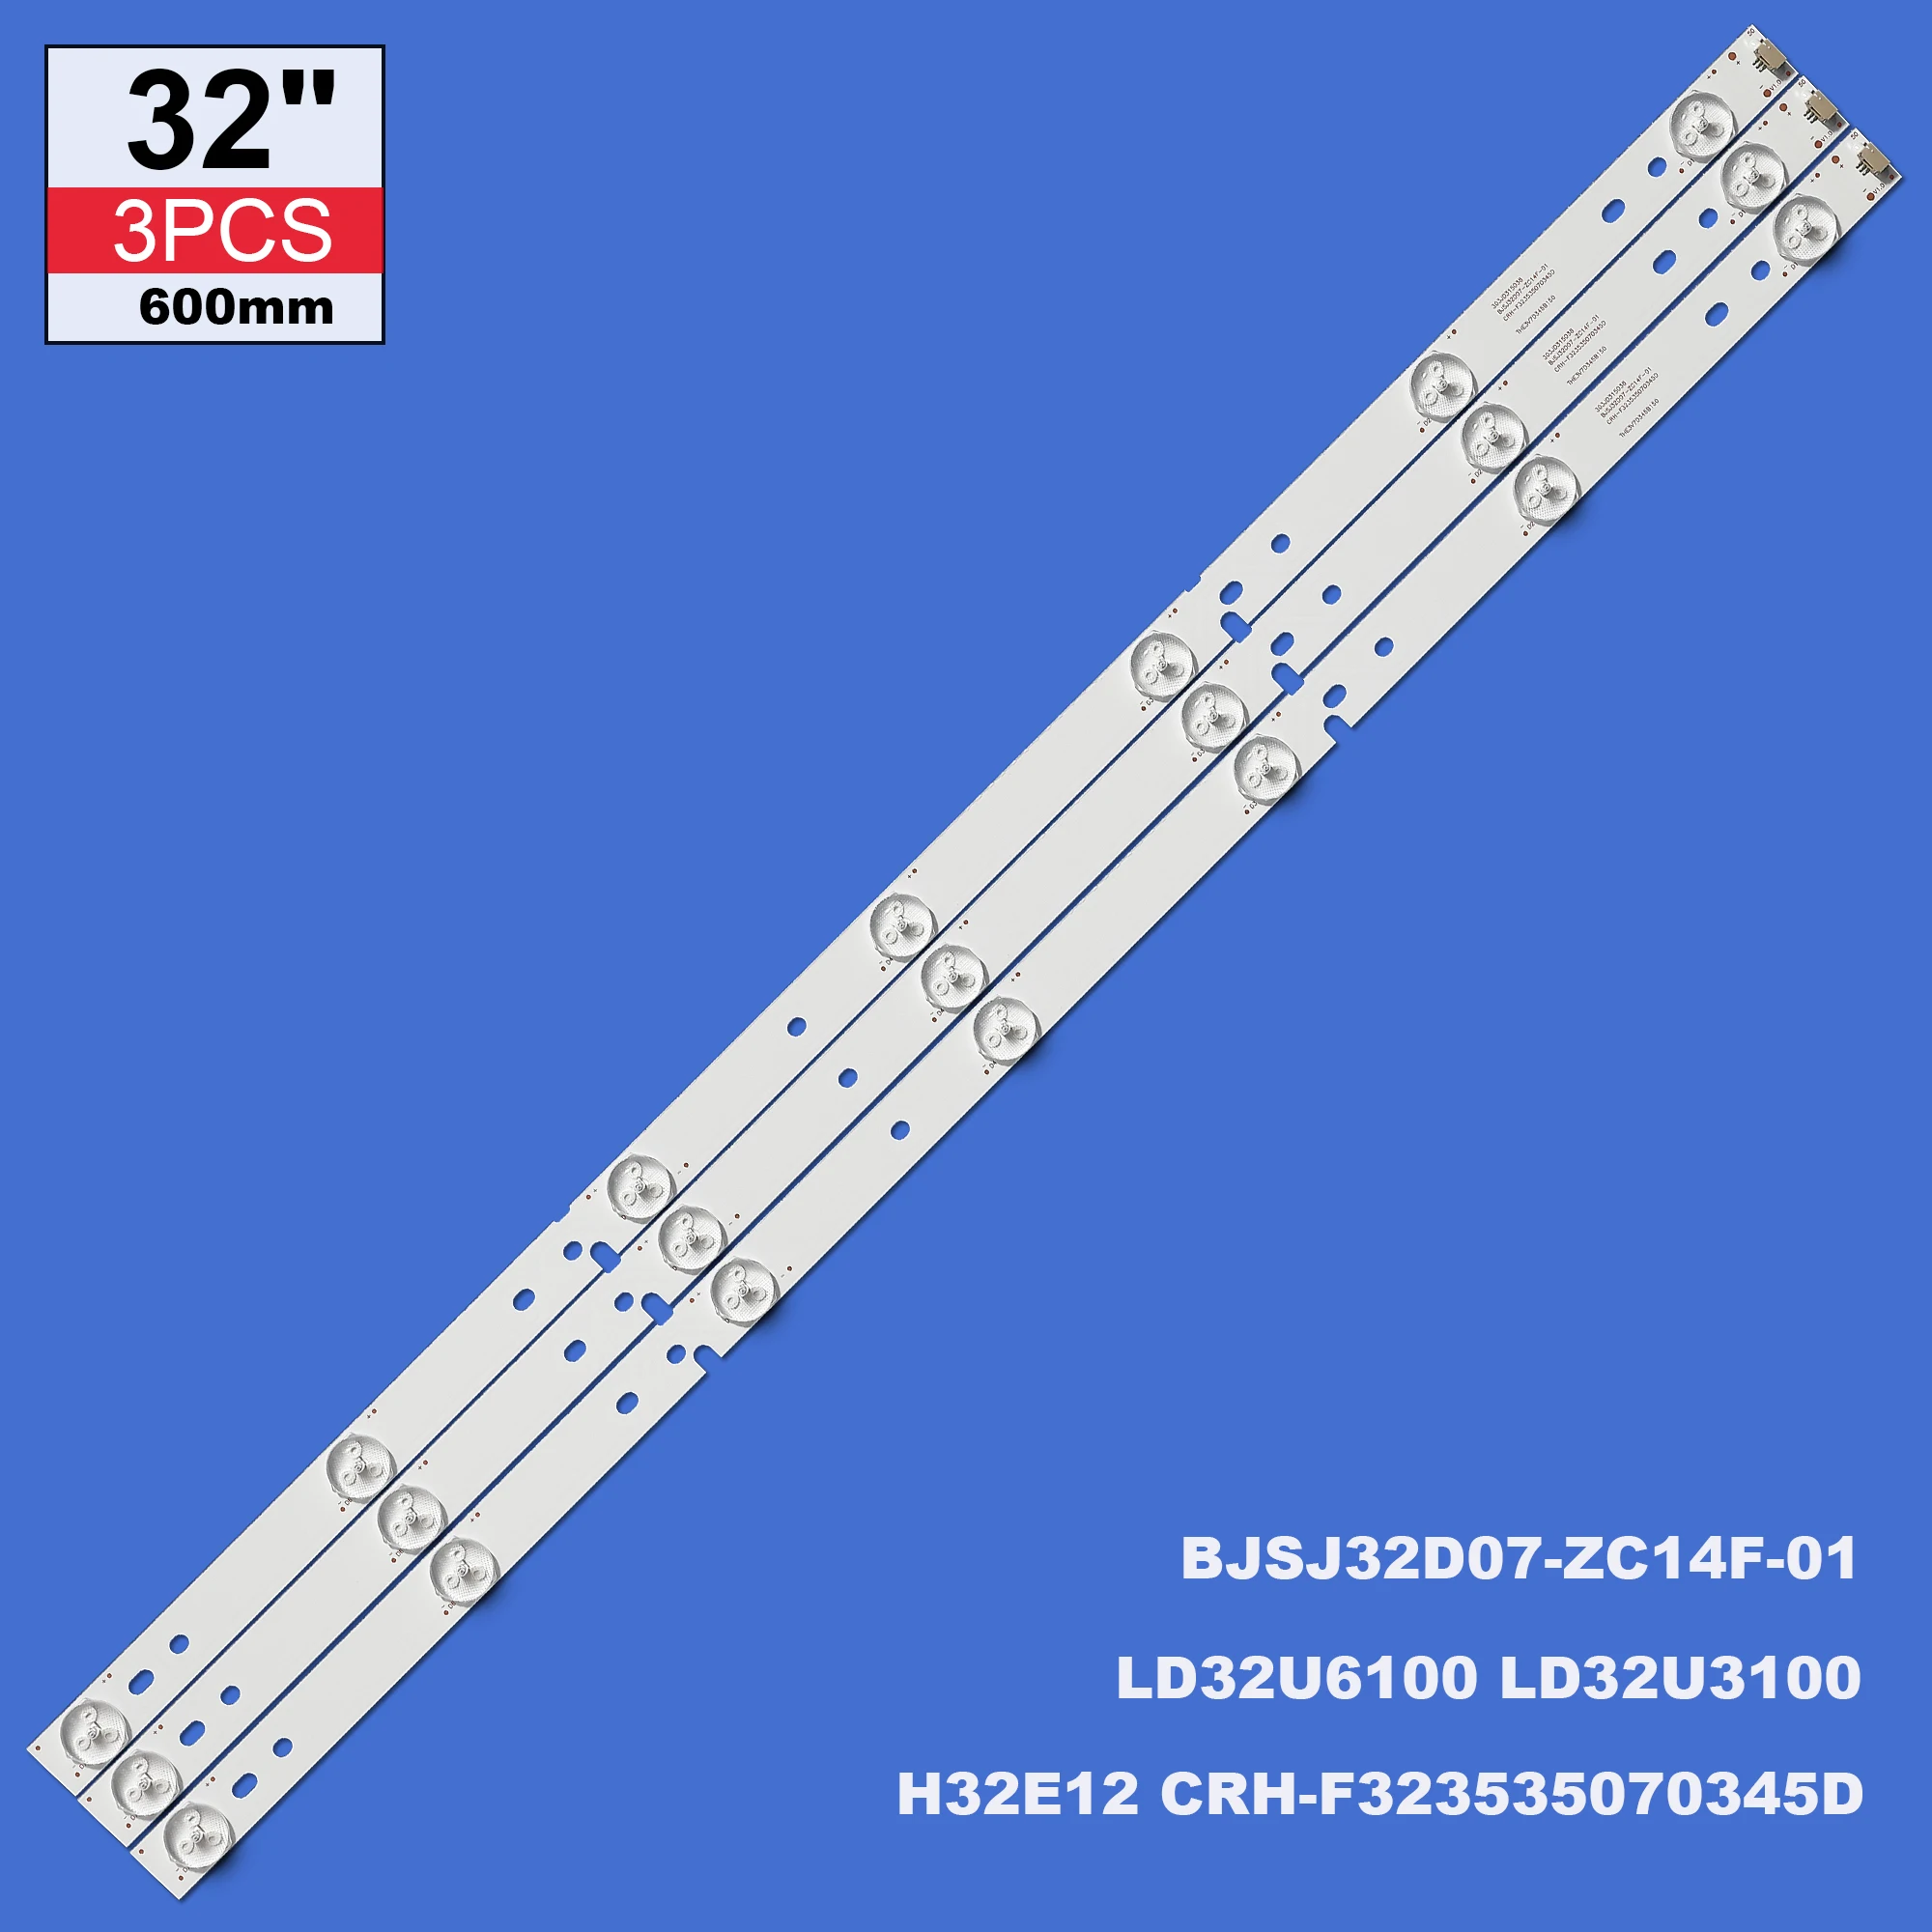 

New 3Pcs LED Backlight strip 7 lamp for 32'' LD32U6100 LD32U3100 H32E12 CRH-F323535070345D BJSJ32D07-ZC14F-01 303JD315036